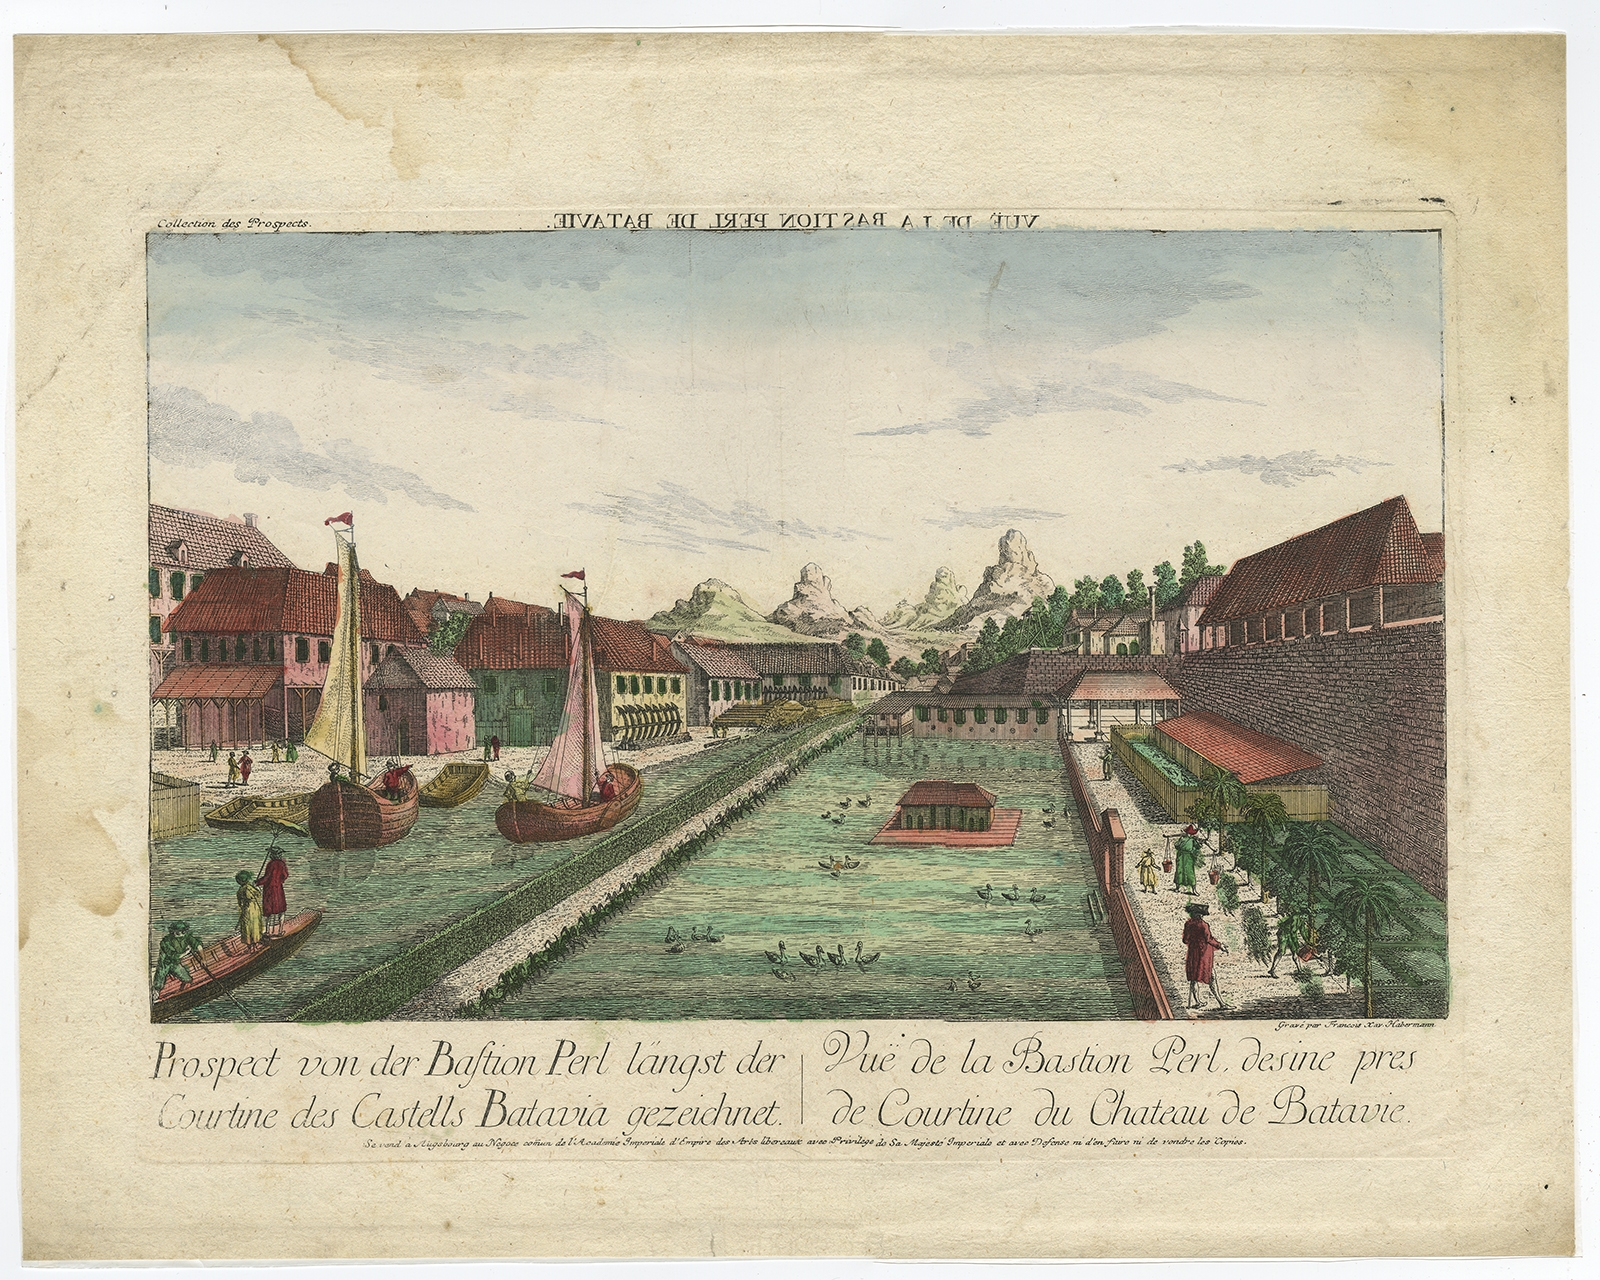 Prospect von der Bastion Perl langst der Courtine des Castells Batavia - Habermann (1770)